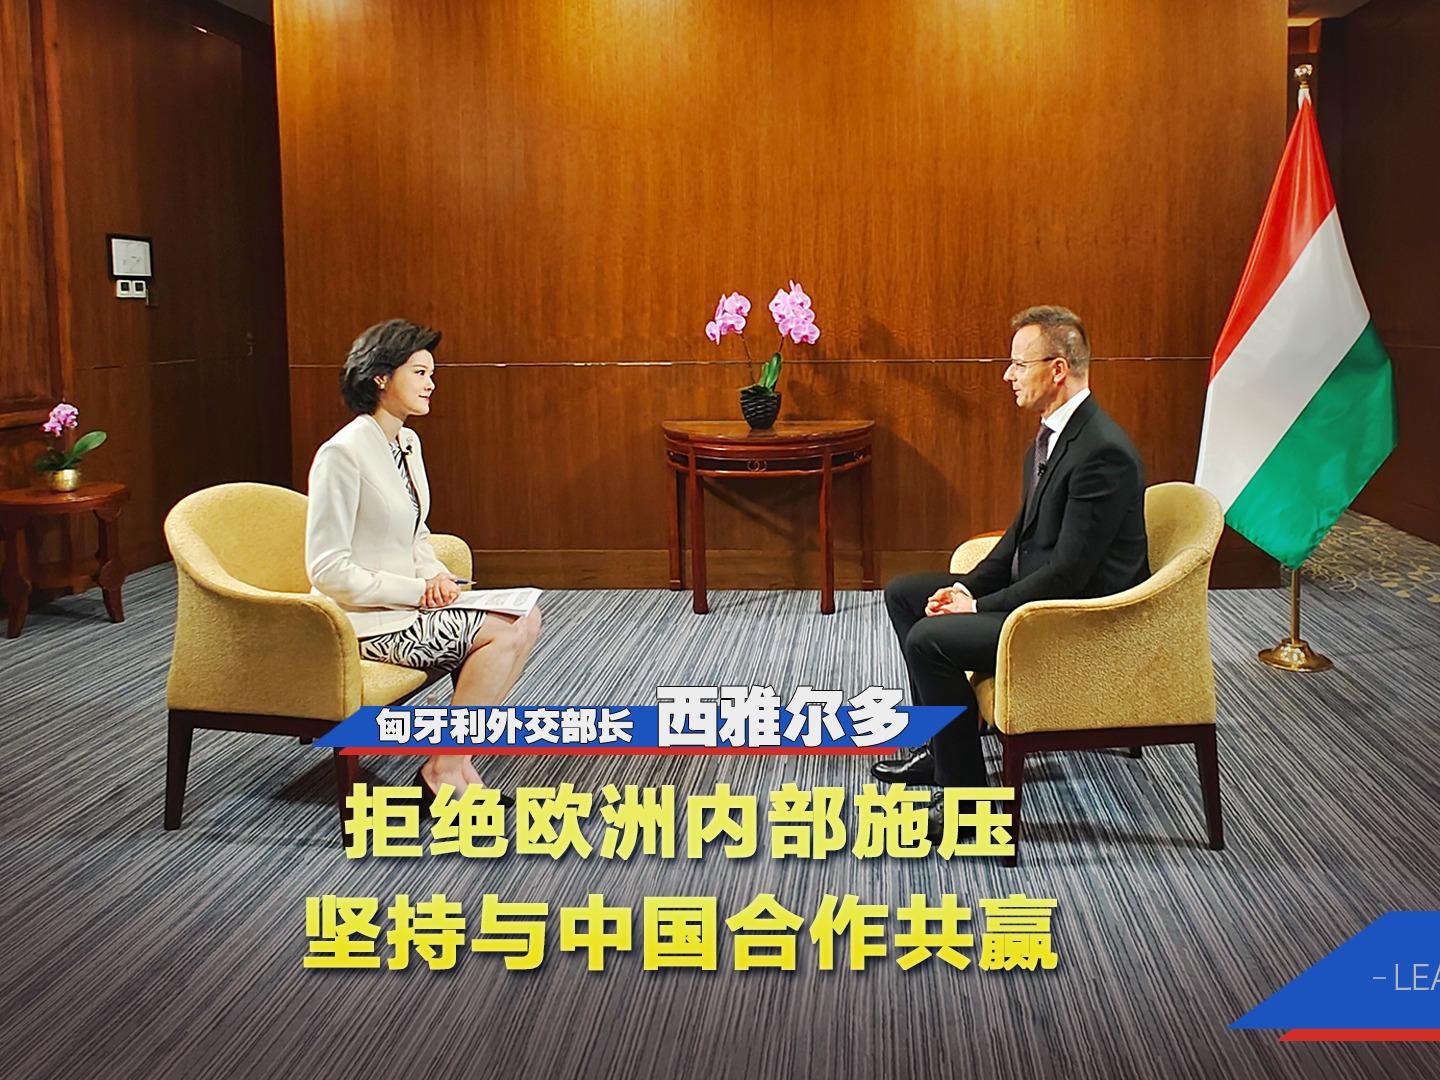 Hungary: China Bawa Peluang Besar Dalam Kerjasama Saling Untung